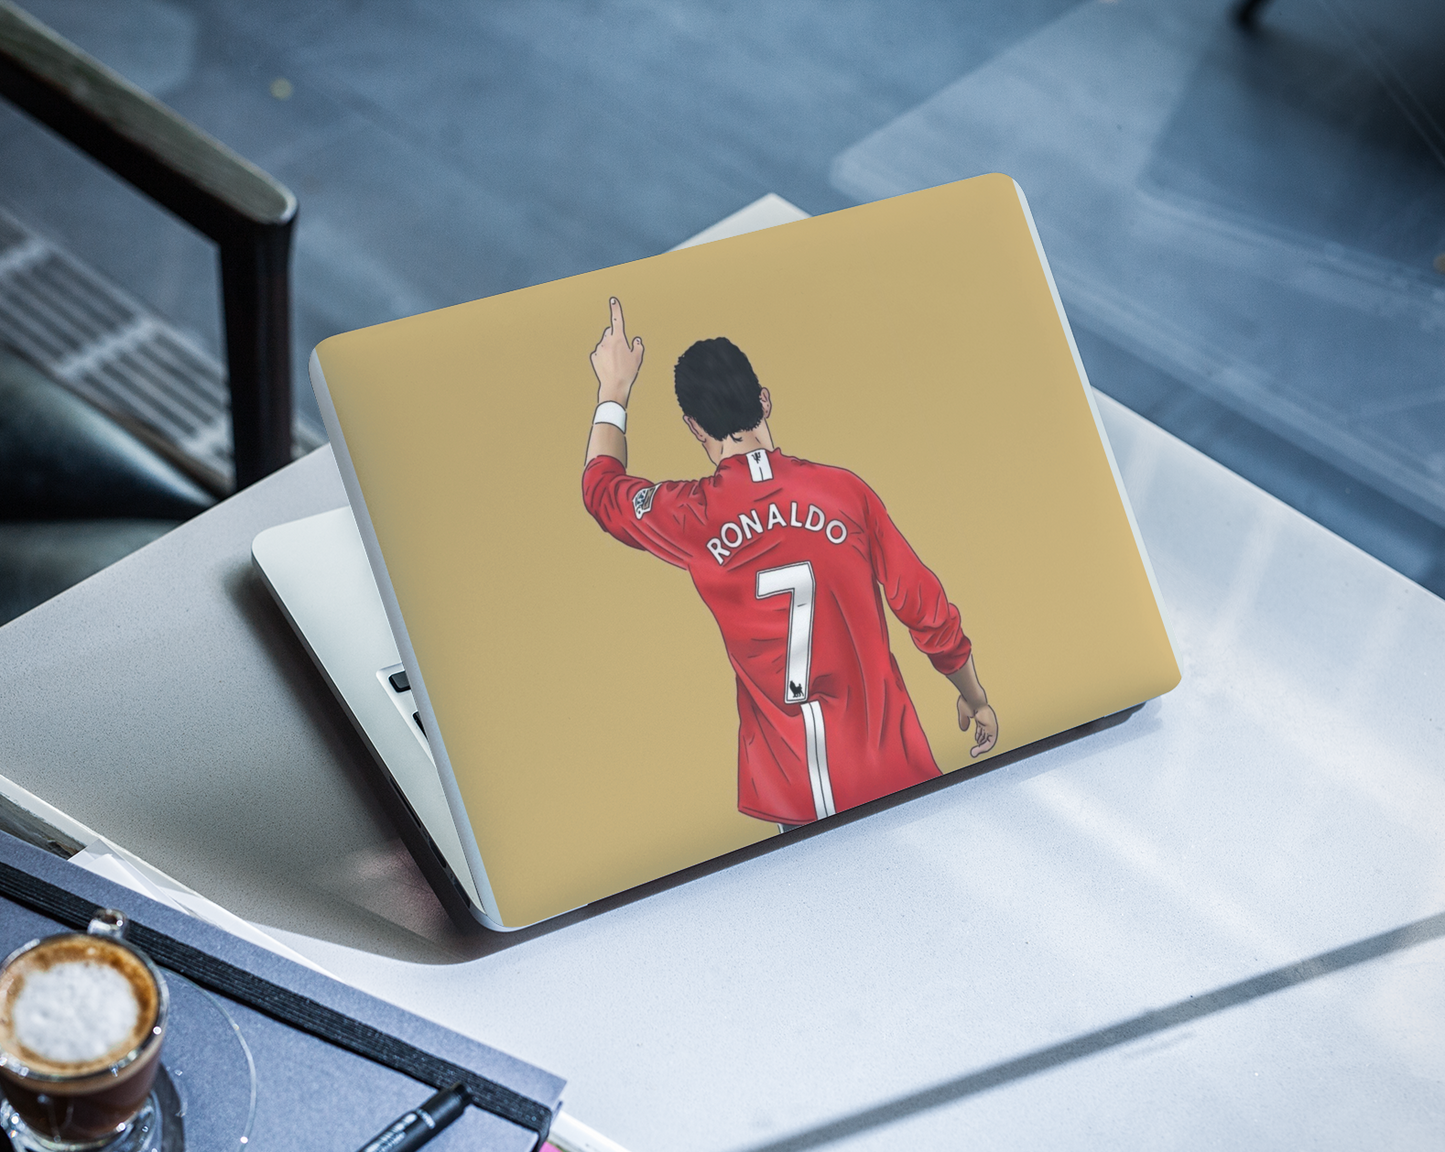 Ronaldo 7 Laptop skin